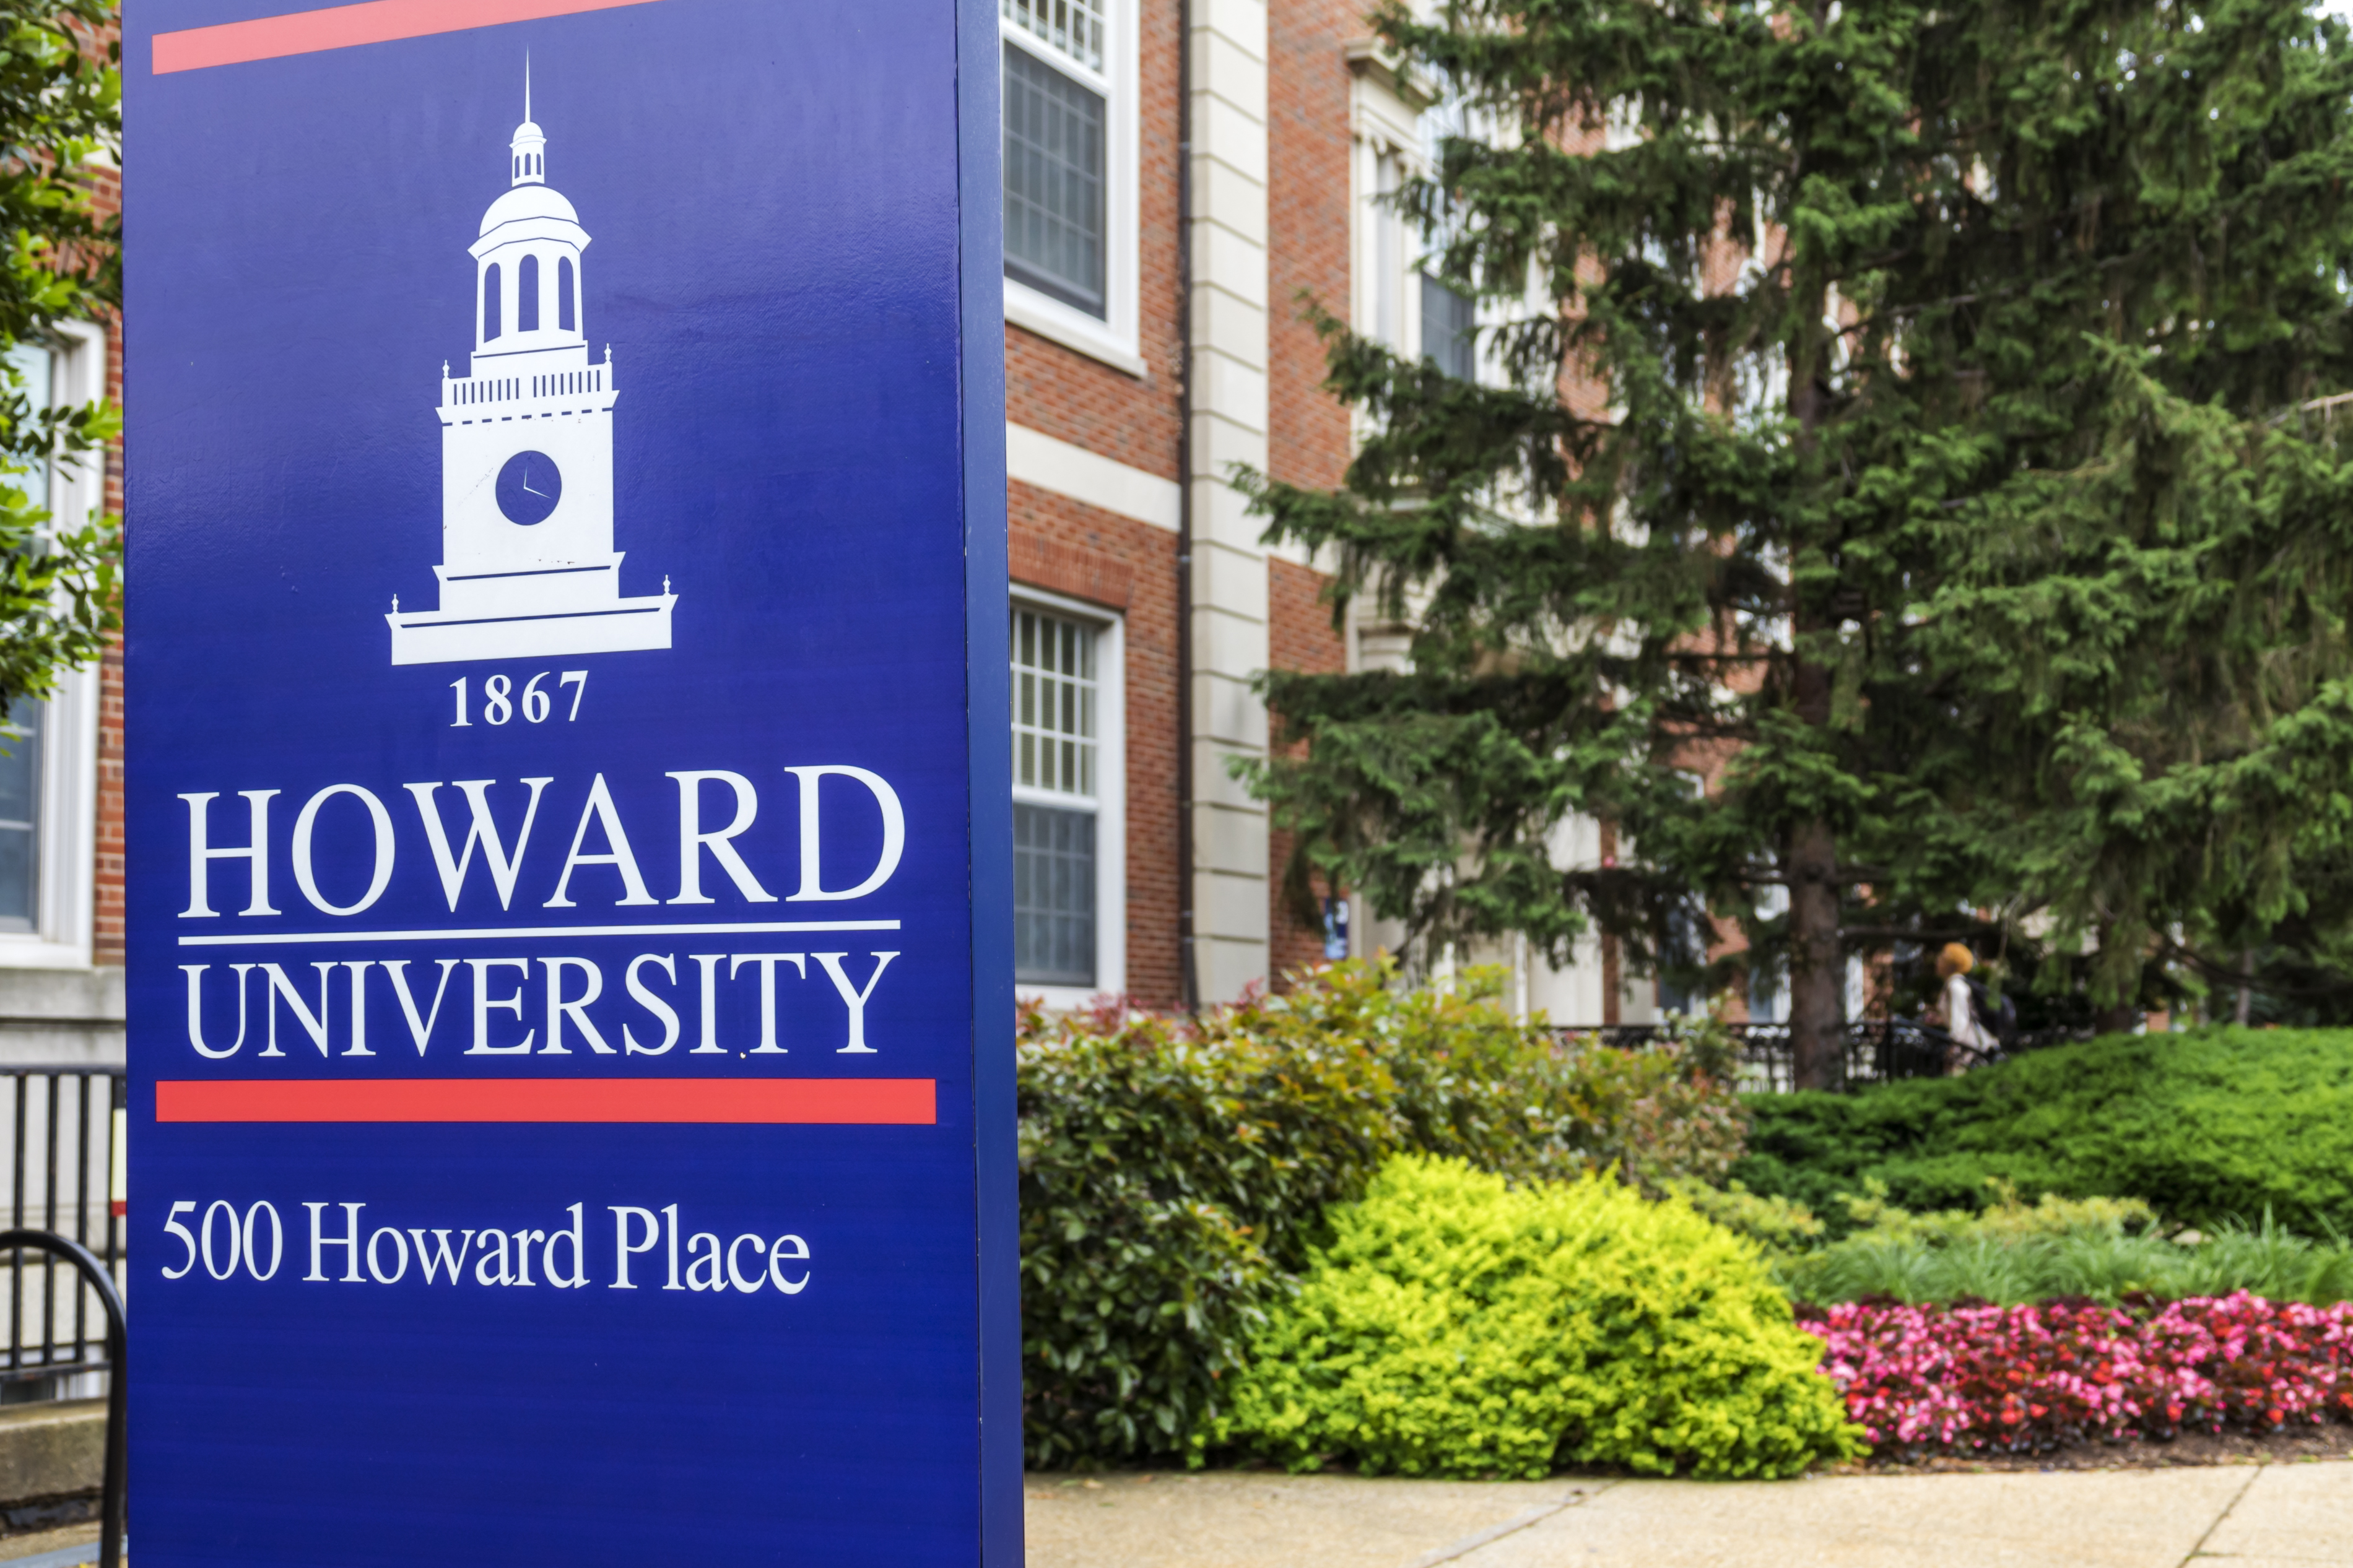 Washington DC, Howard University campus sign